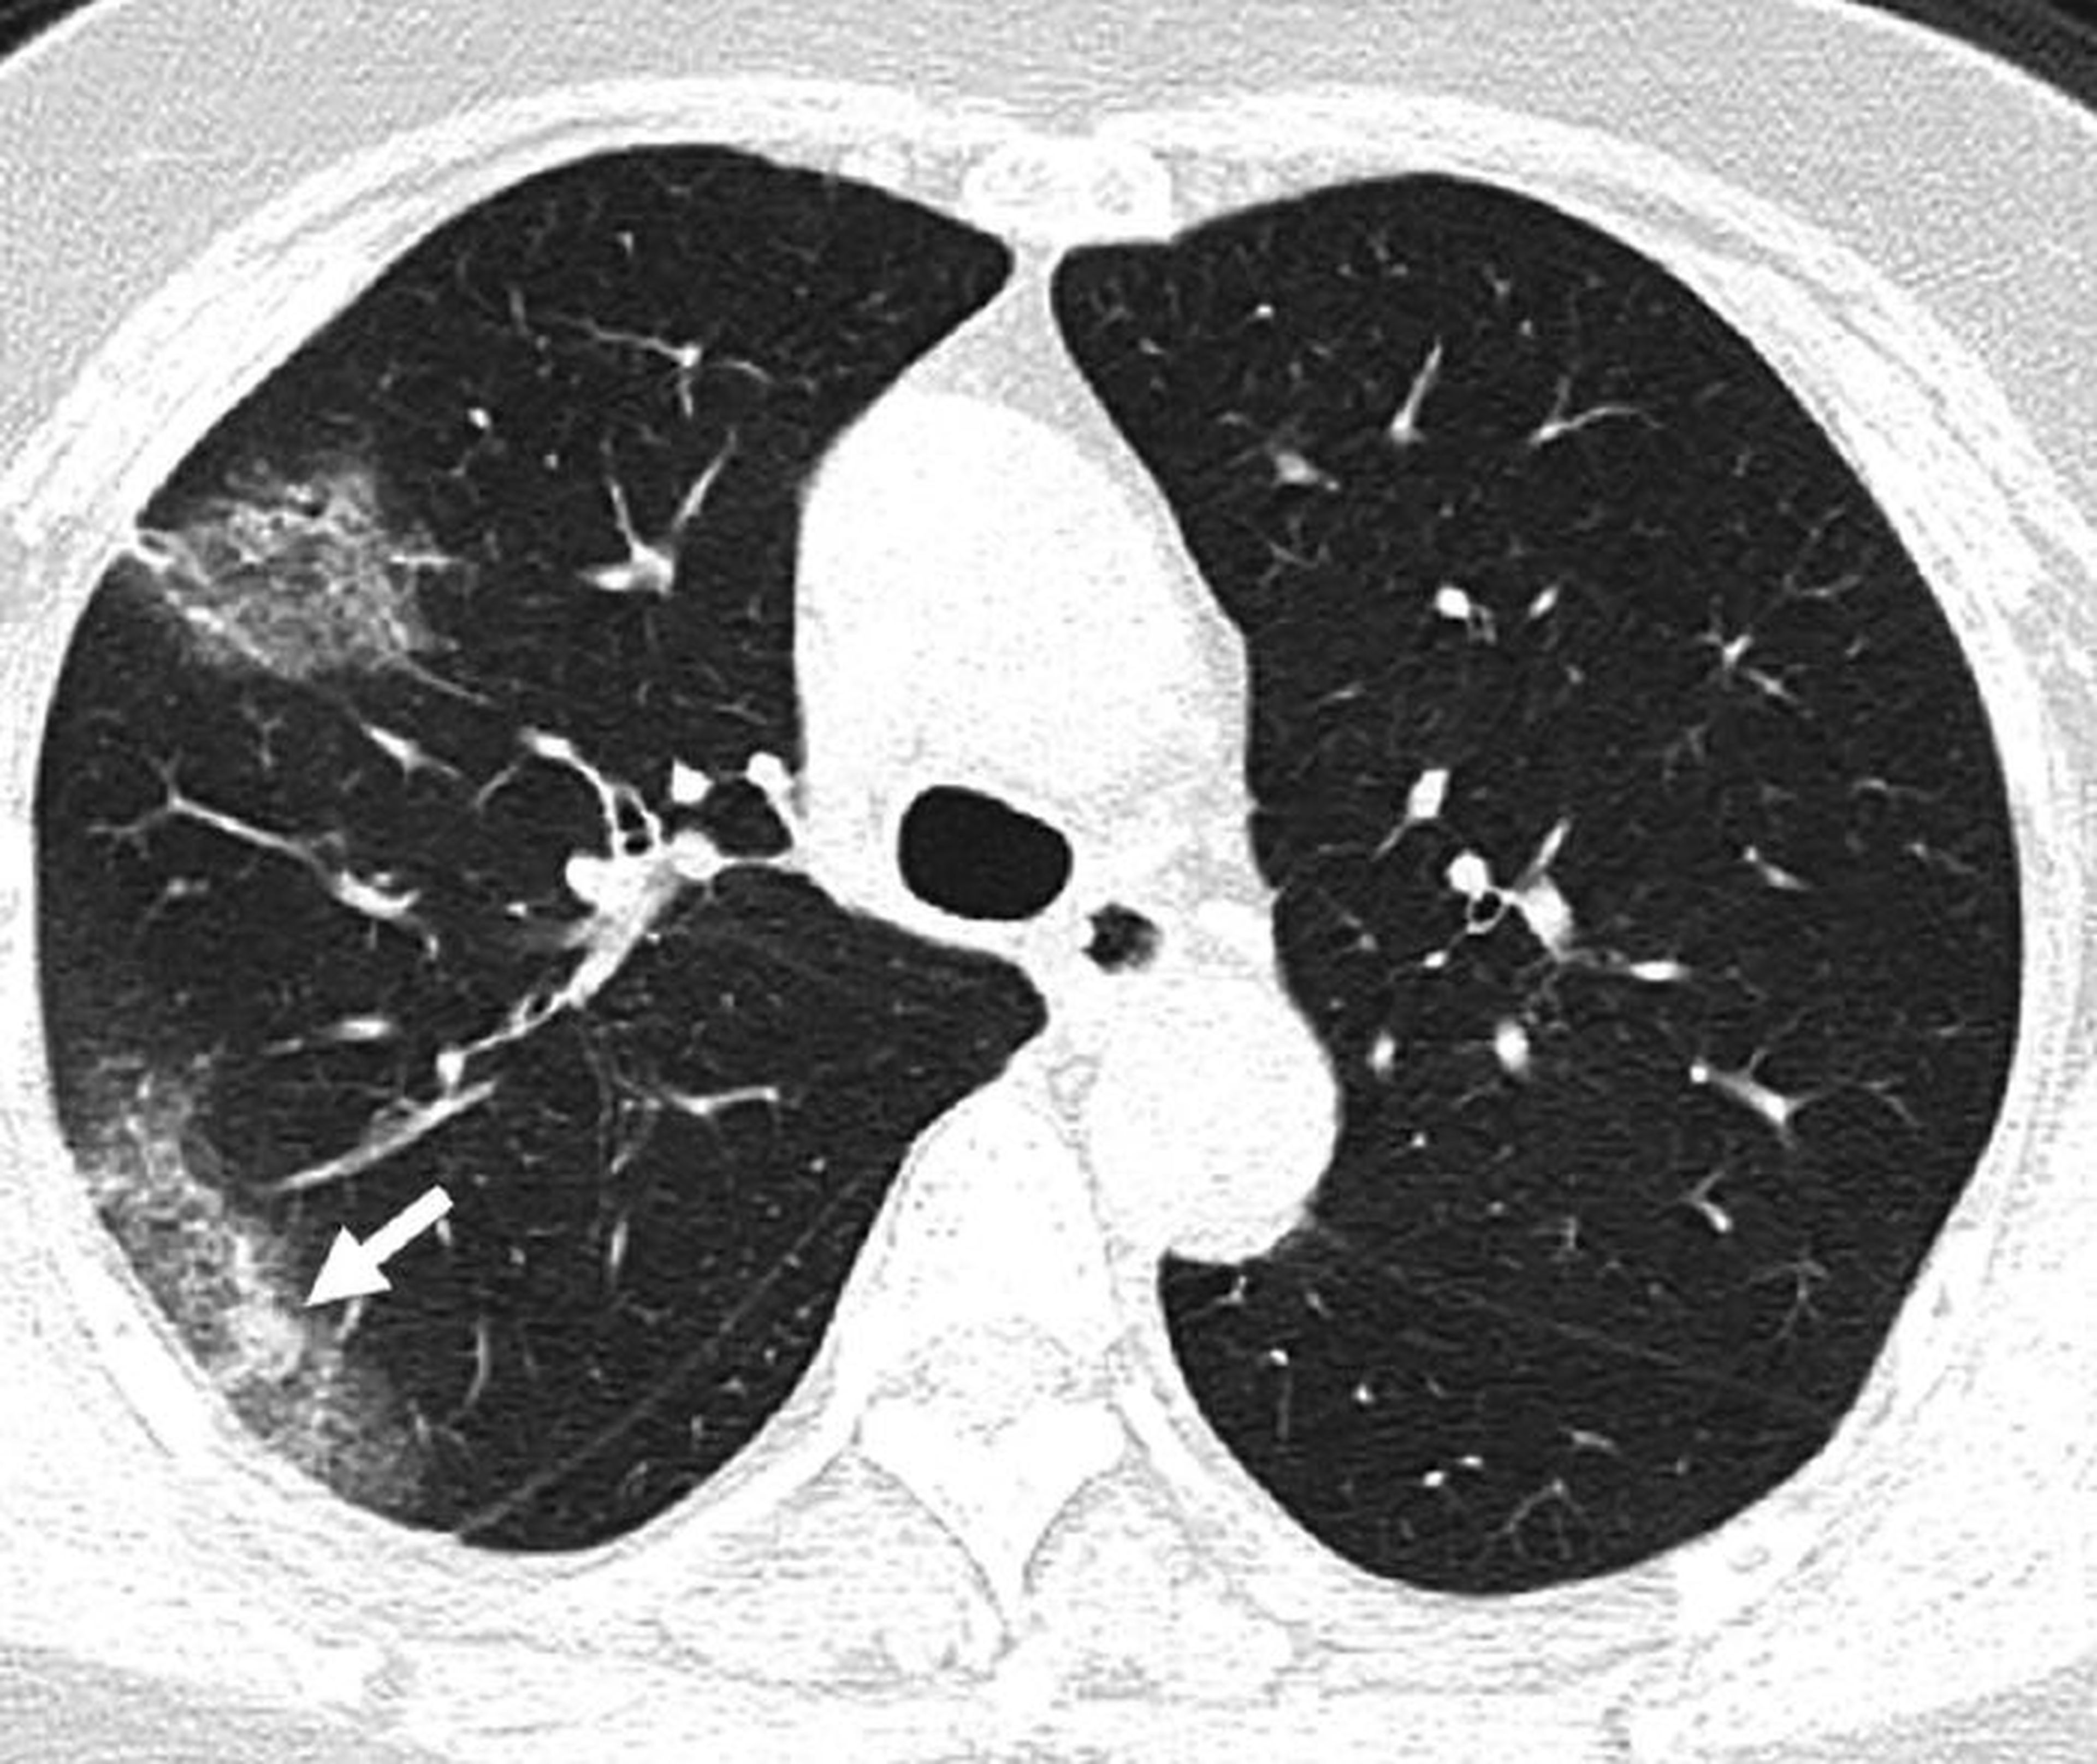 Un escáner muestra la apariencia de "vidrio esmerilado" de una infección severa de COVID-19, provocada por el líquido en los pulmones.